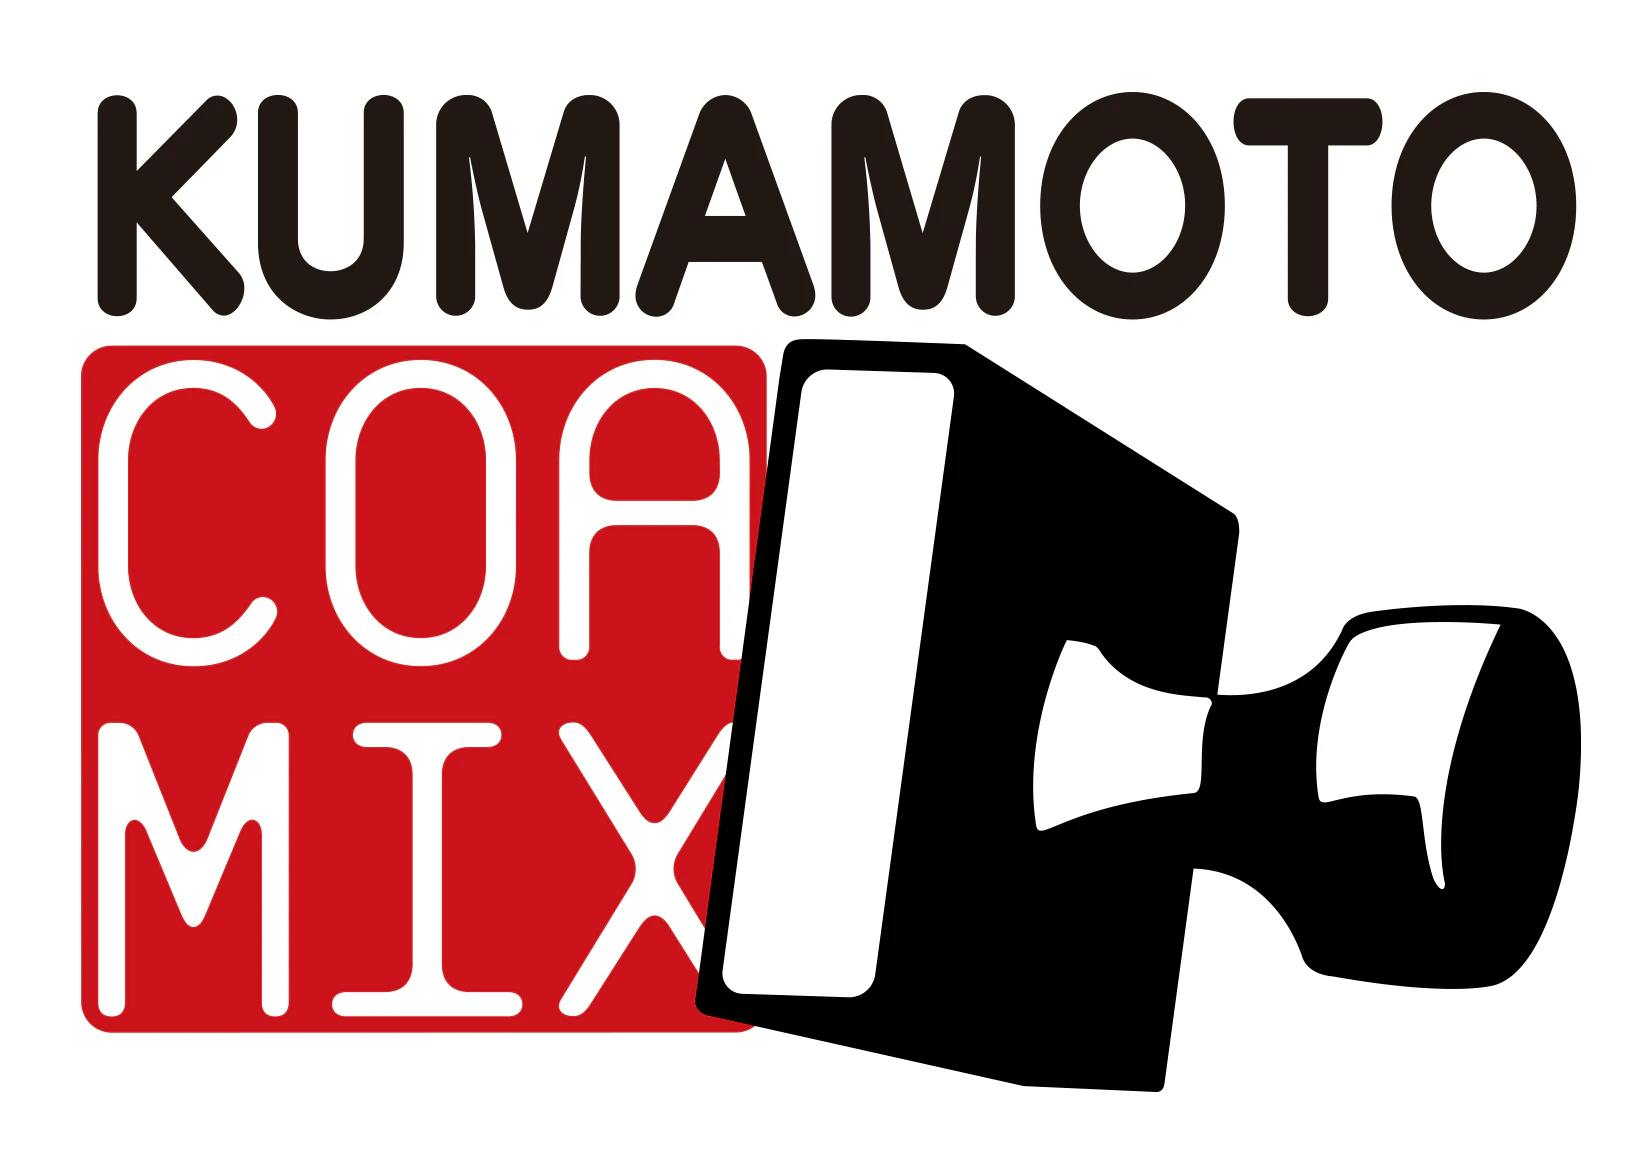 انقر هنا للوصول إلى الموقع الرسمي لكوماموتو كور ميكس!